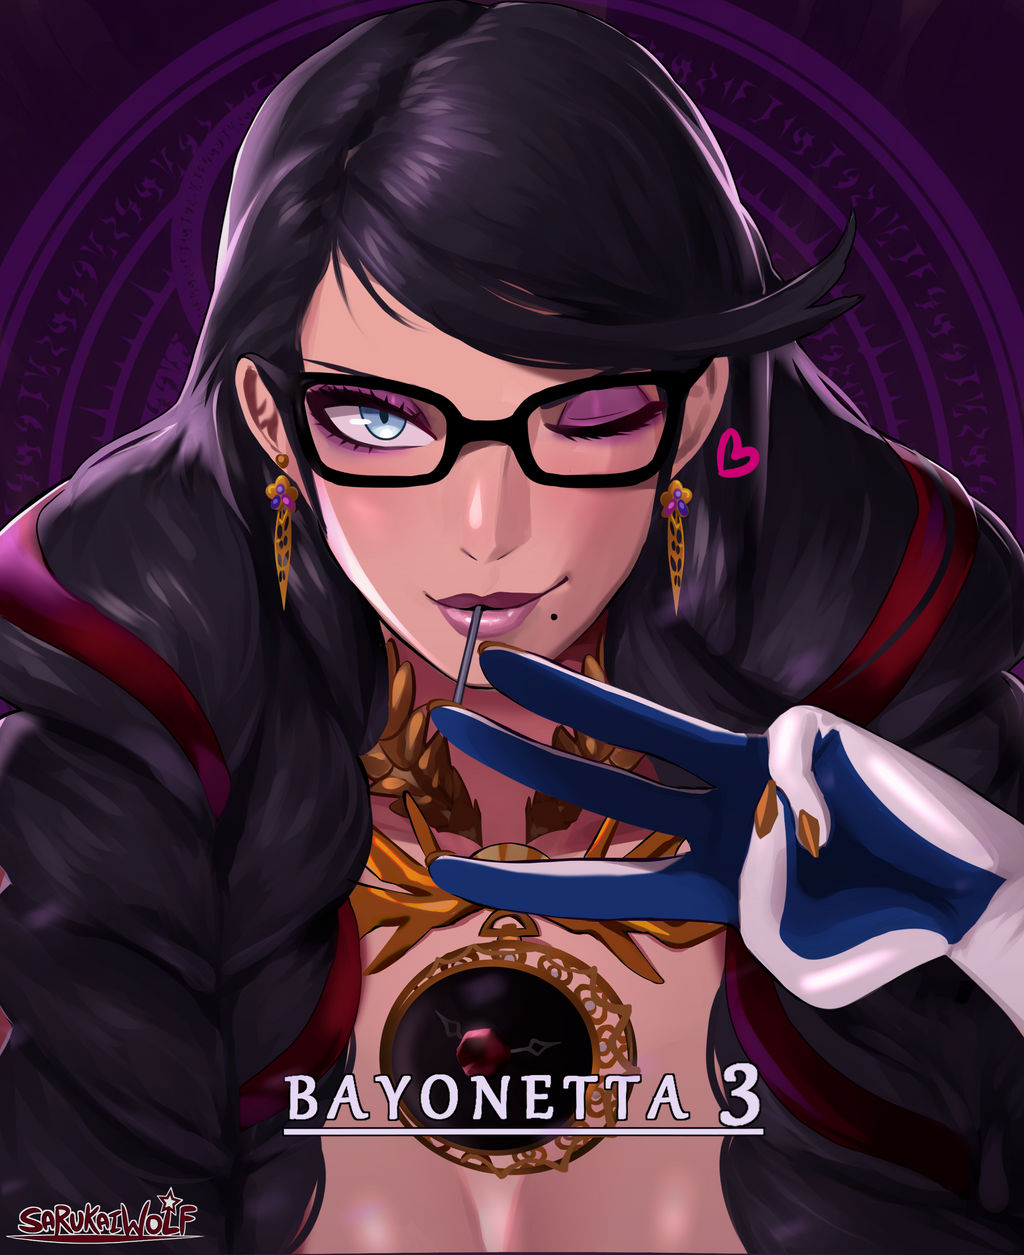 Bayonetta 3 Official Screenshot 3 by RusAlexFox on DeviantArt